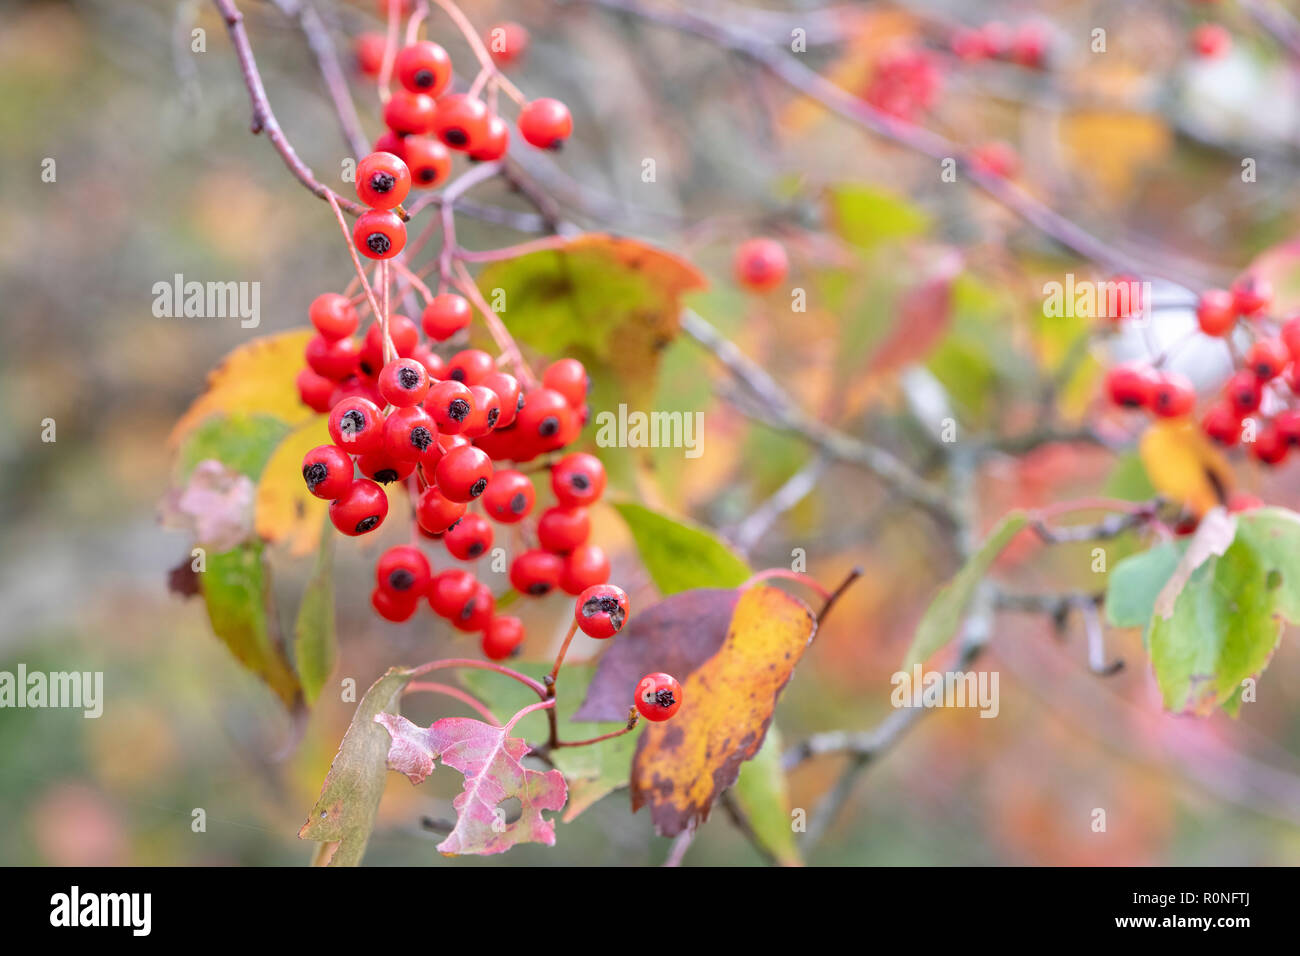 Crataegus phaenopyrum. Washington hawthorn Laub und roten Beeren im Herbst. Großbritannien Stockfoto